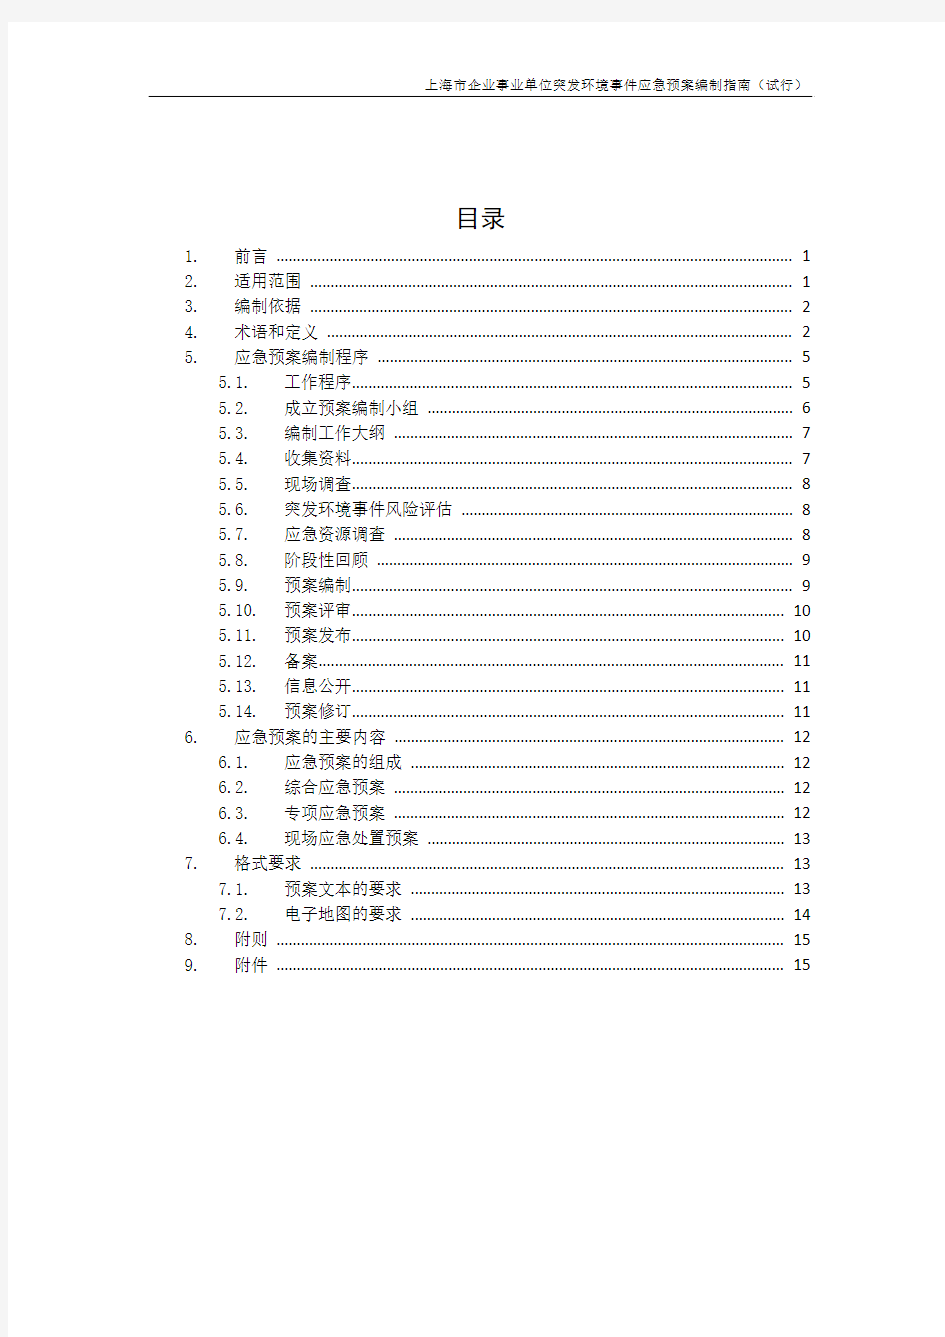 上海市企业事业单位突发环境事件应急预案编制指南